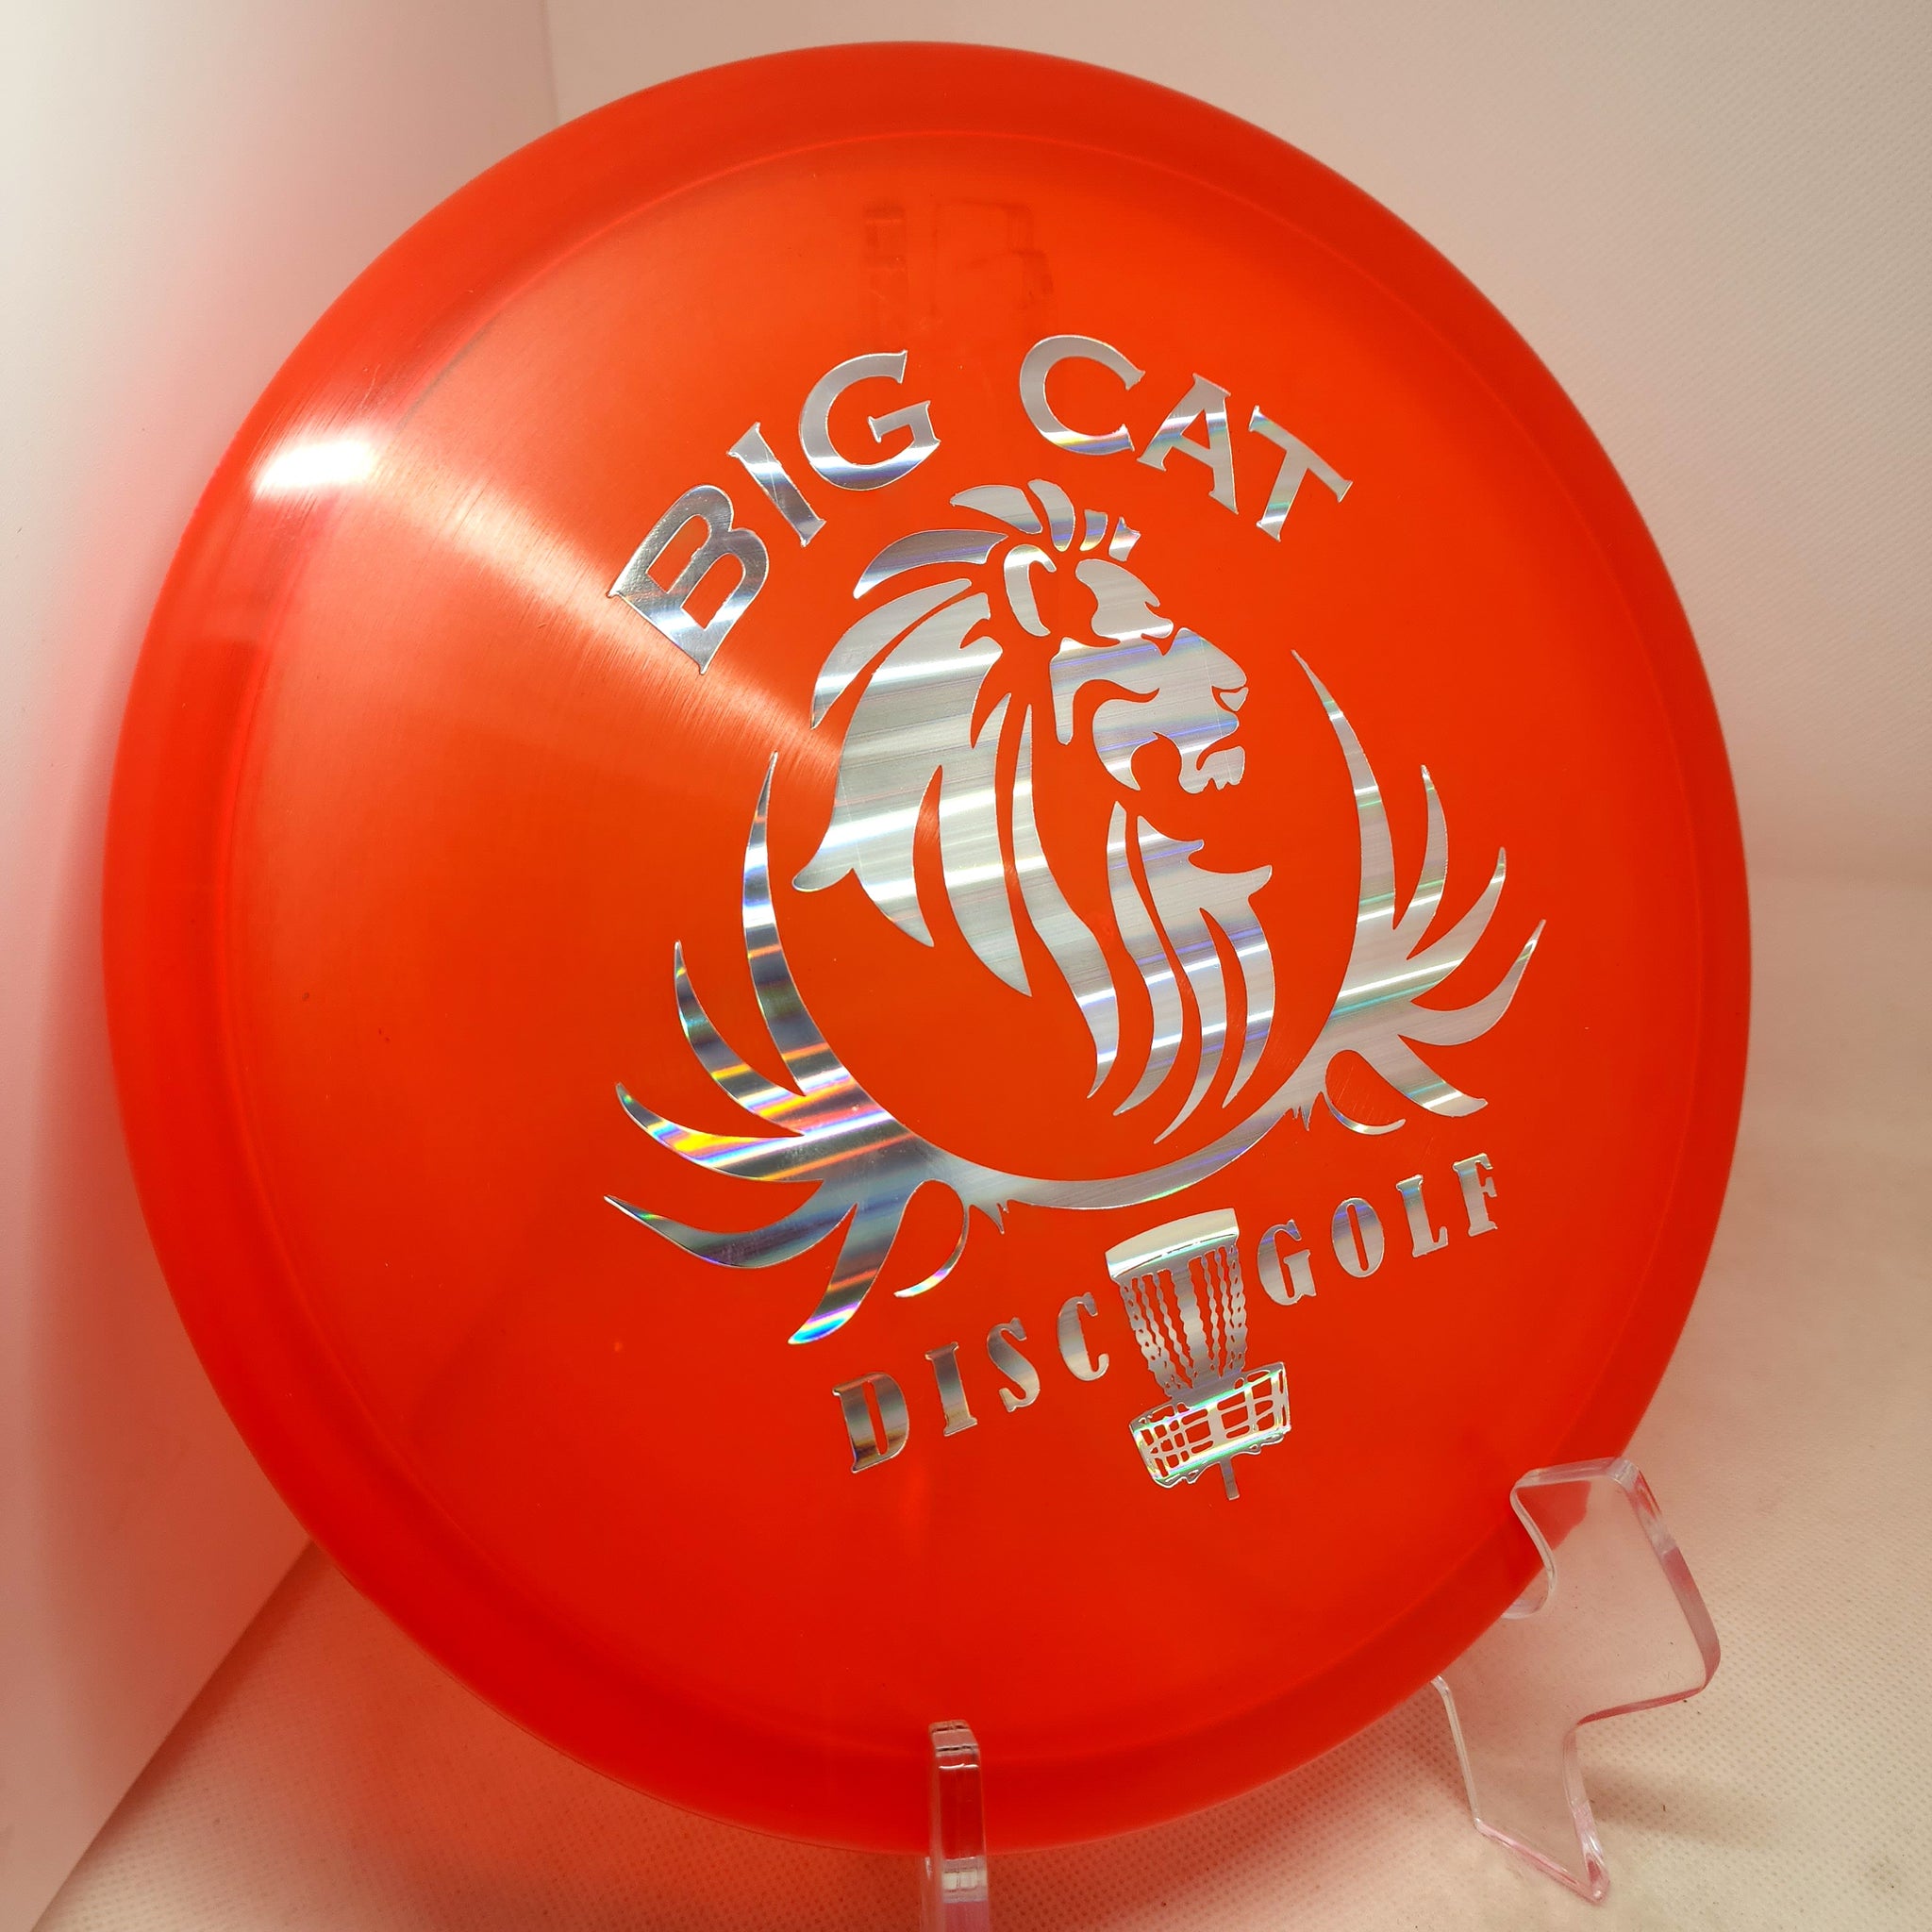 Zone (Z Plastic) Big Cat Stamp